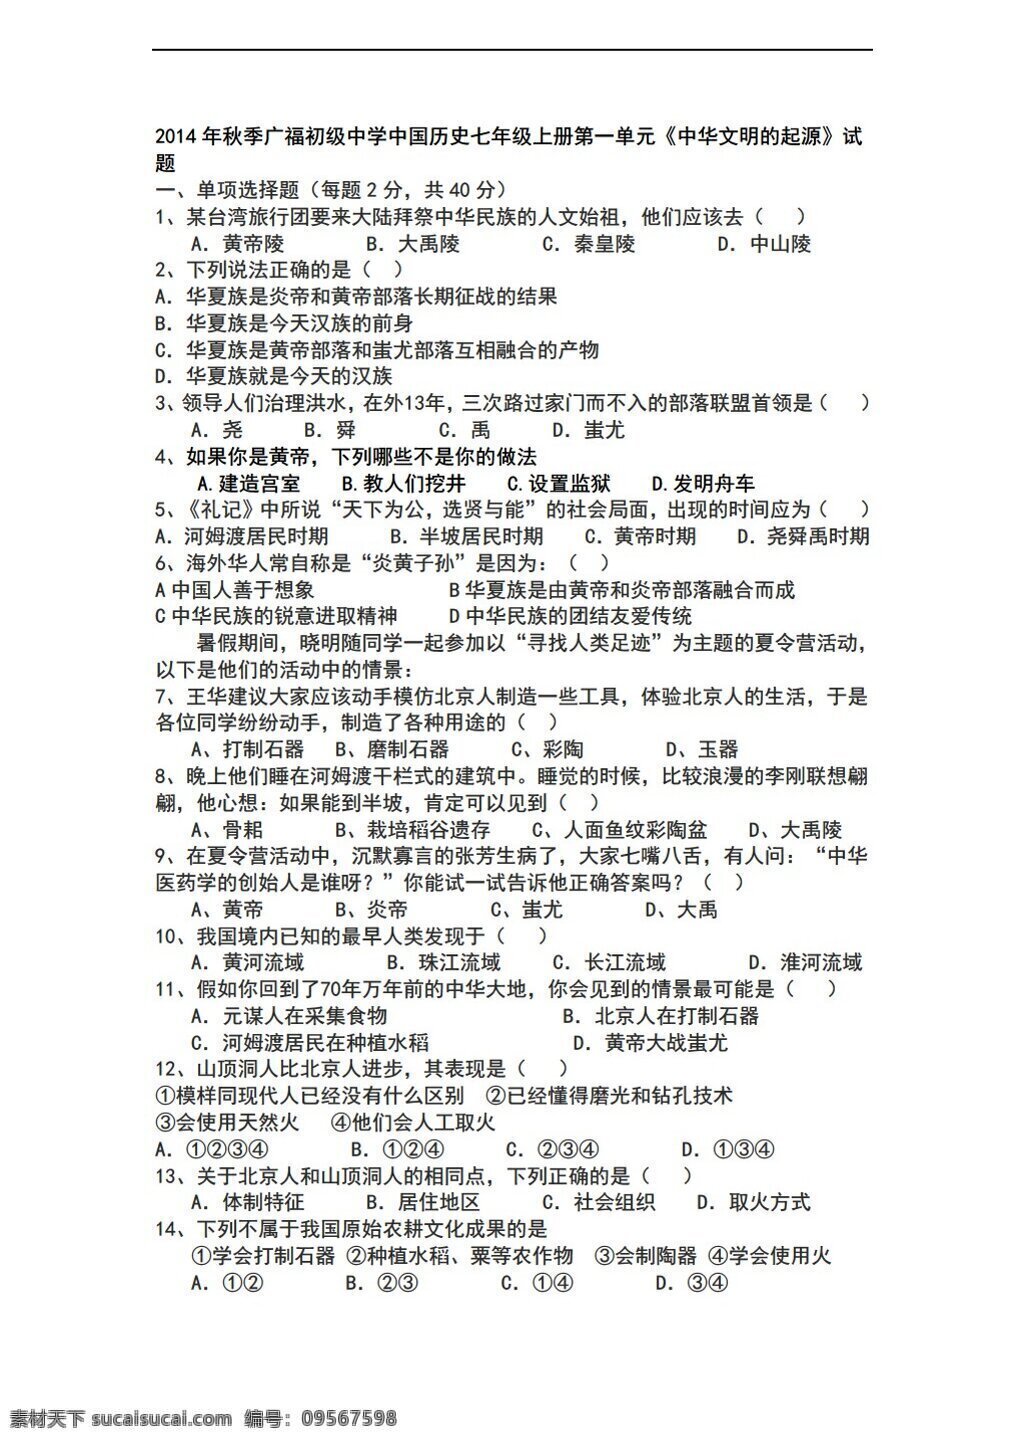 七 年级 上册 历史 中国 单元 中华 文明 起源 试题 川教版 七年级上册 试题试卷